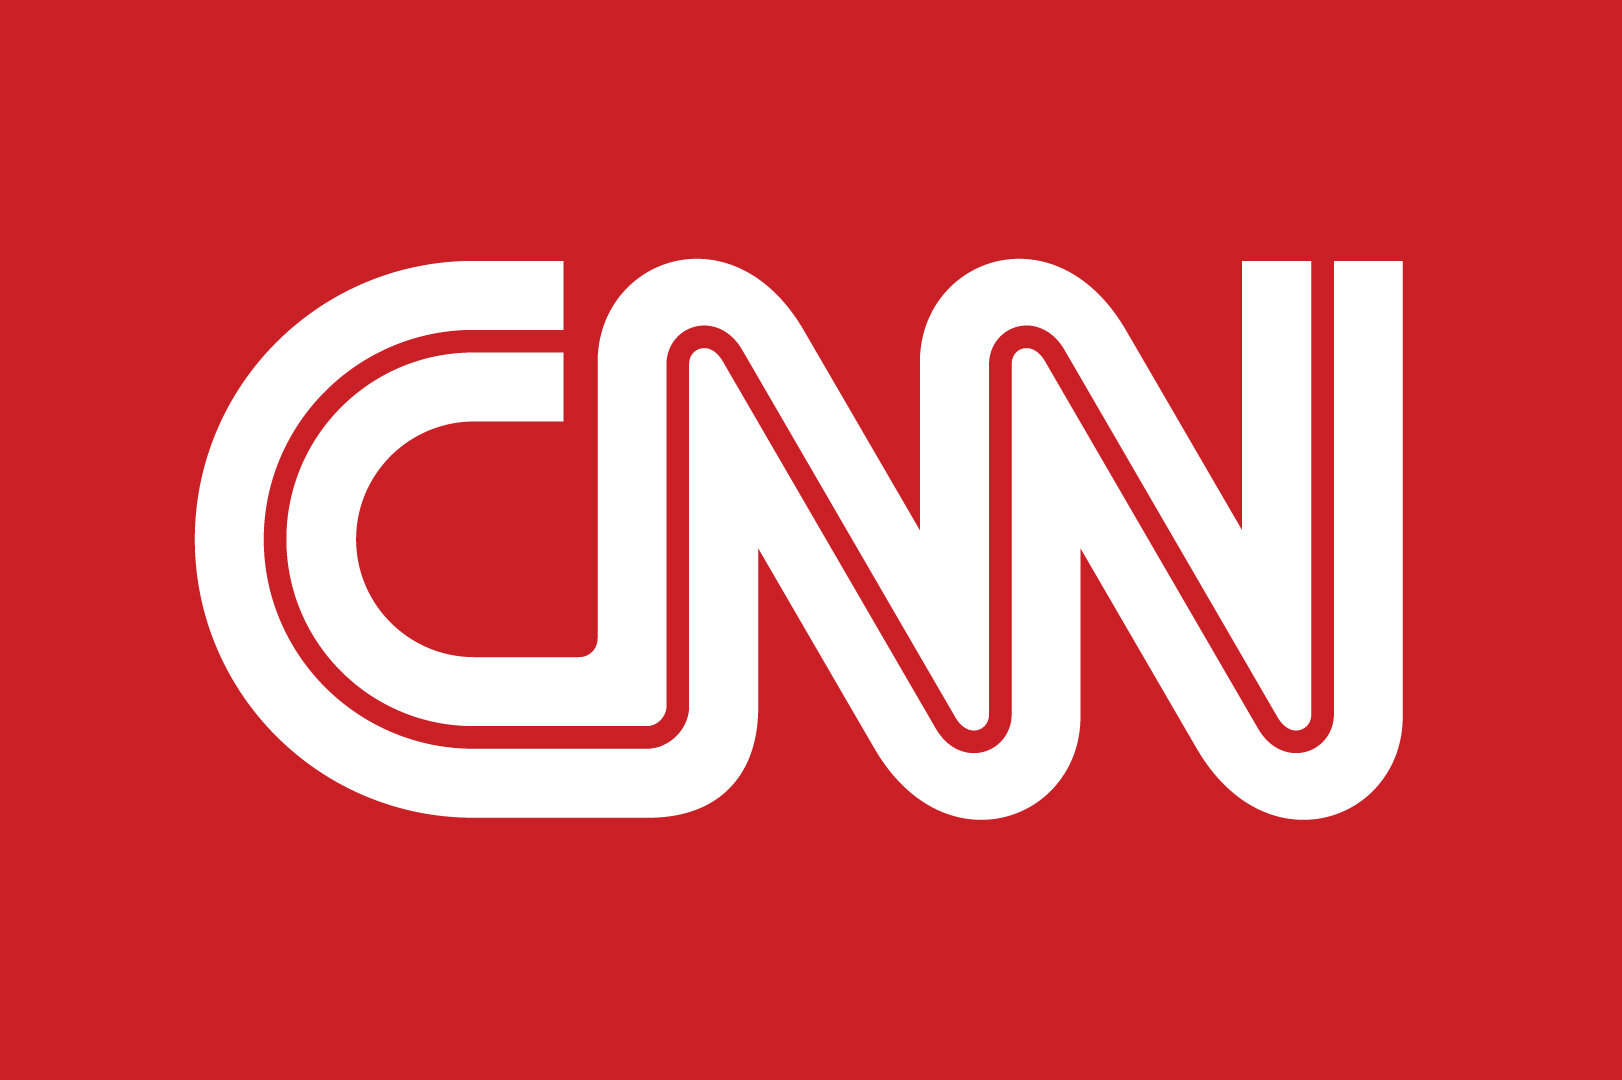 CNN-White-on-Red-1.jpg